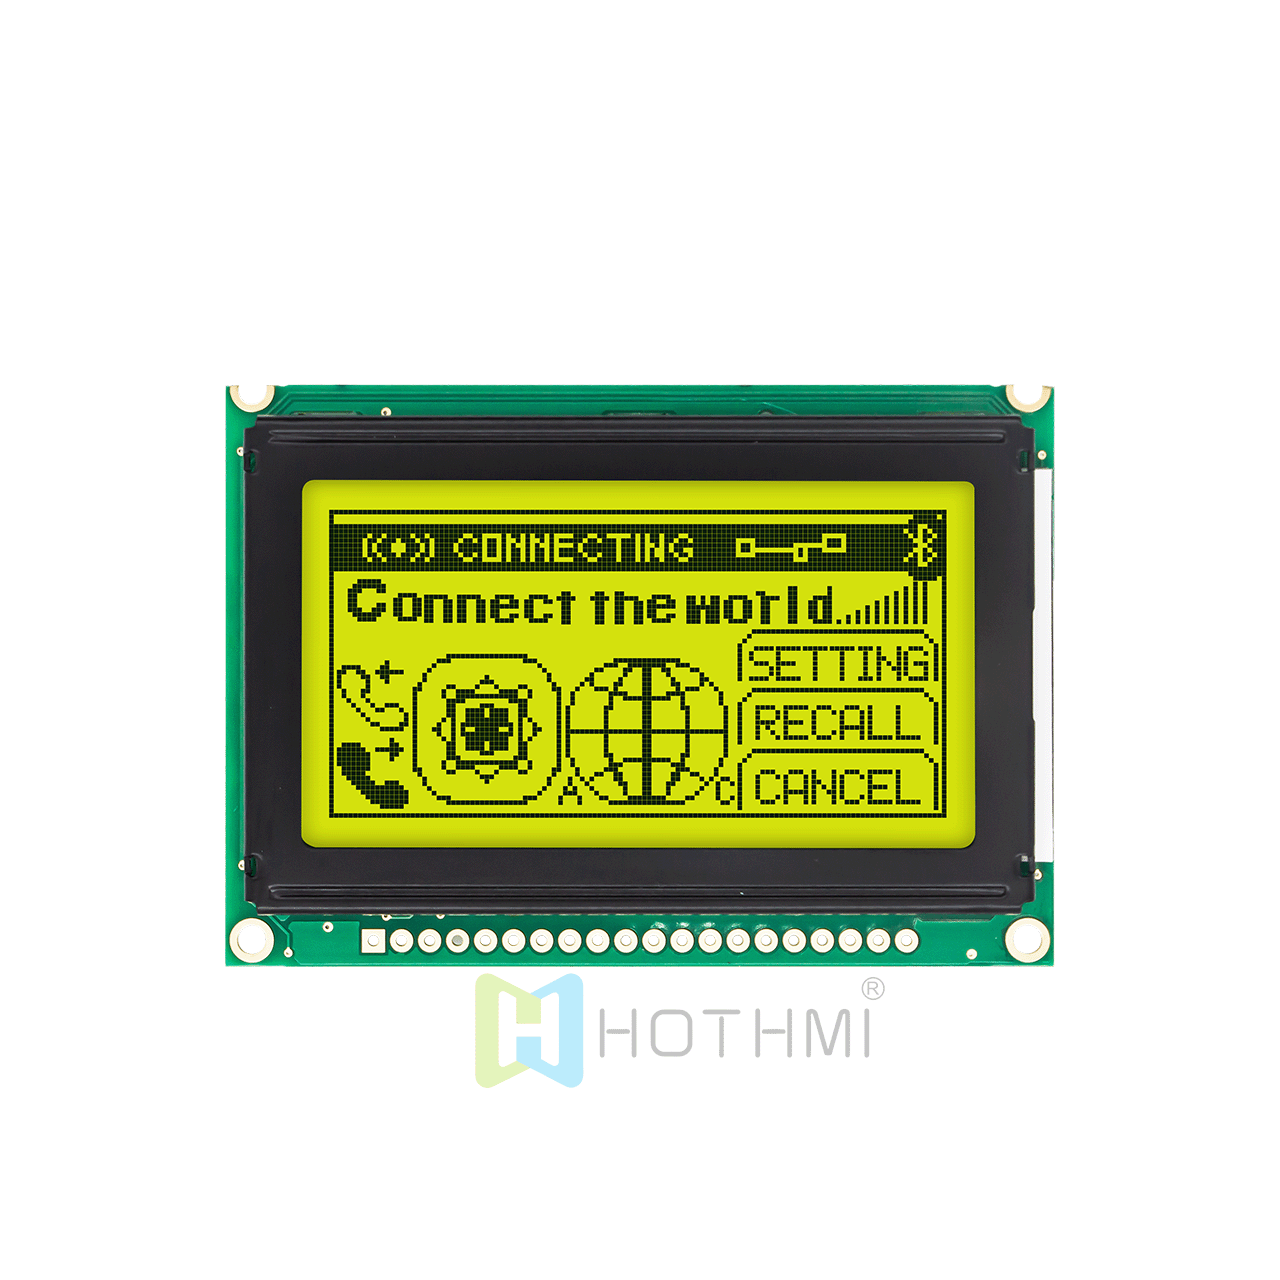 2.7英寸 128 x 64 图形液晶显示器 | 12864 图形 LCD  |  STN +黄绿背光 | 半透偏光片